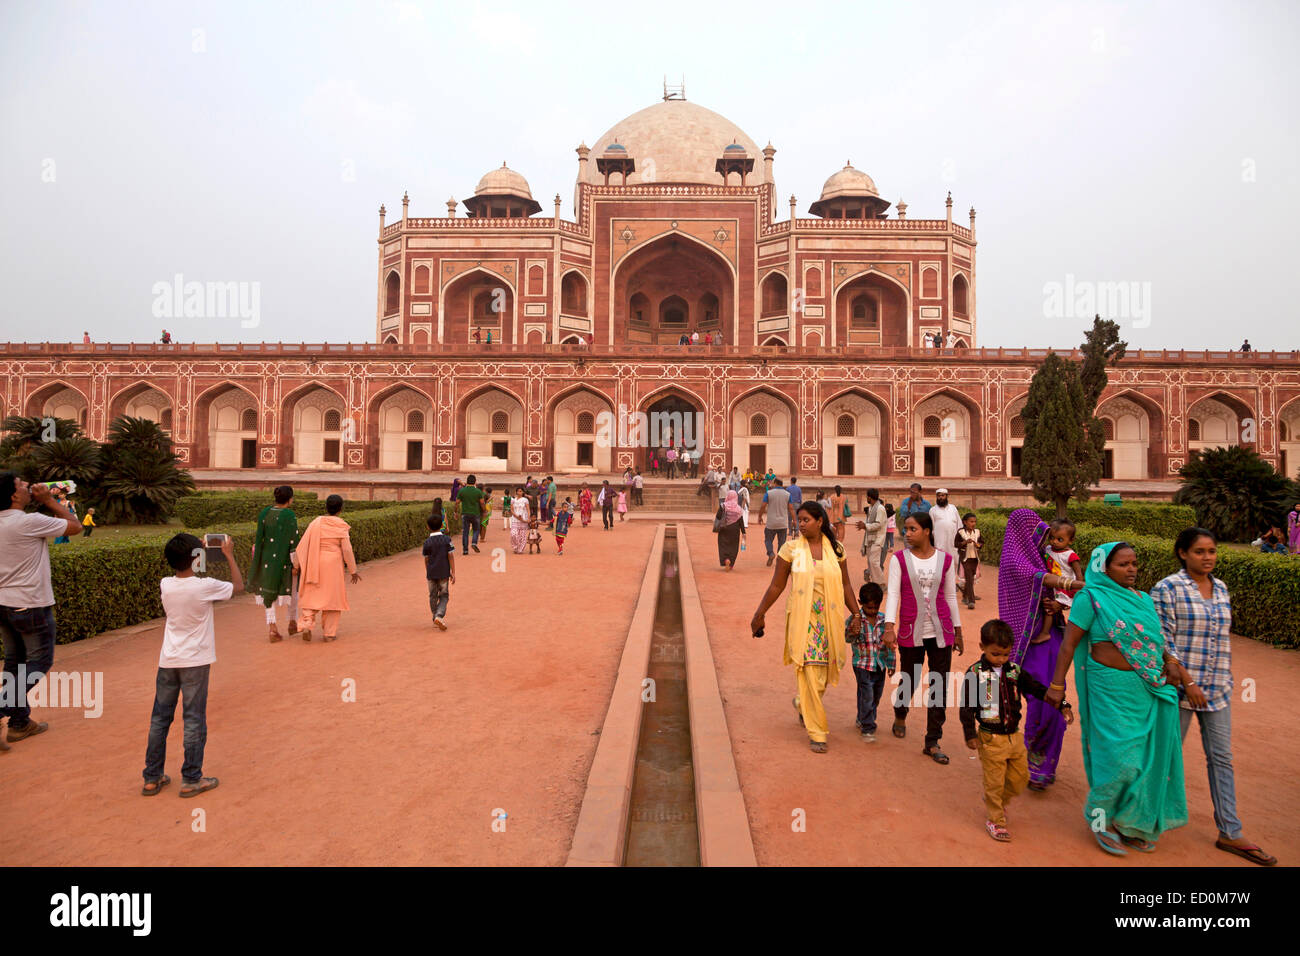 Les visiteurs indiens à l'entrée de Tombe de Humayun, patrimoine mondial de l'UNESCO à New Delhi, Inde, Asie Banque D'Images